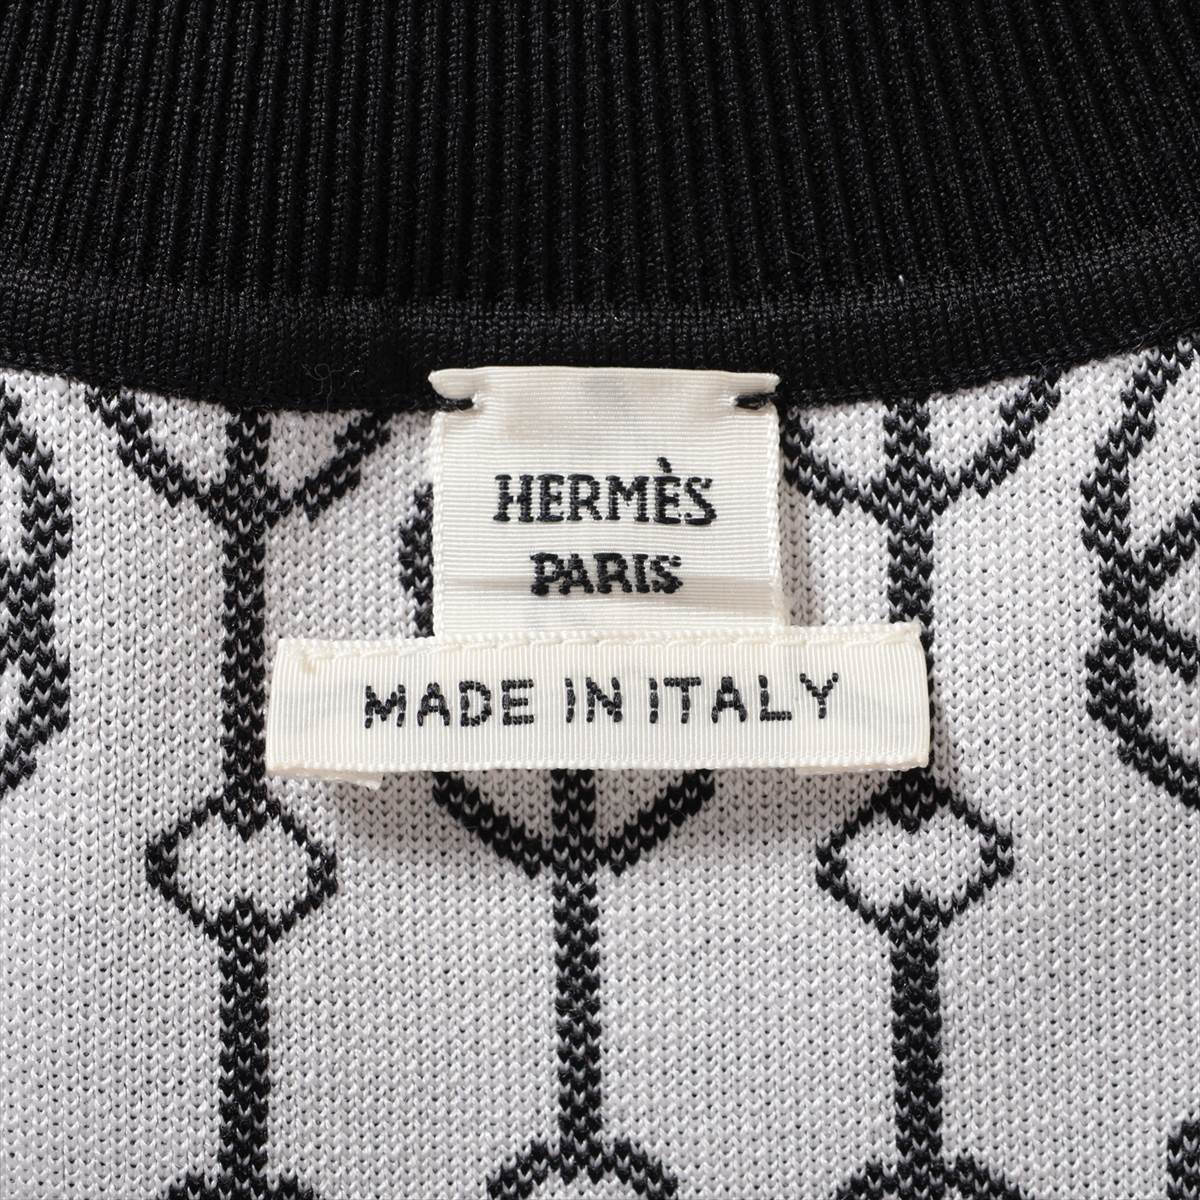 Hermès Chaîne d'Ancre Silk x nylon Knit dress 36 Ladies' Black × White  2E2500D4